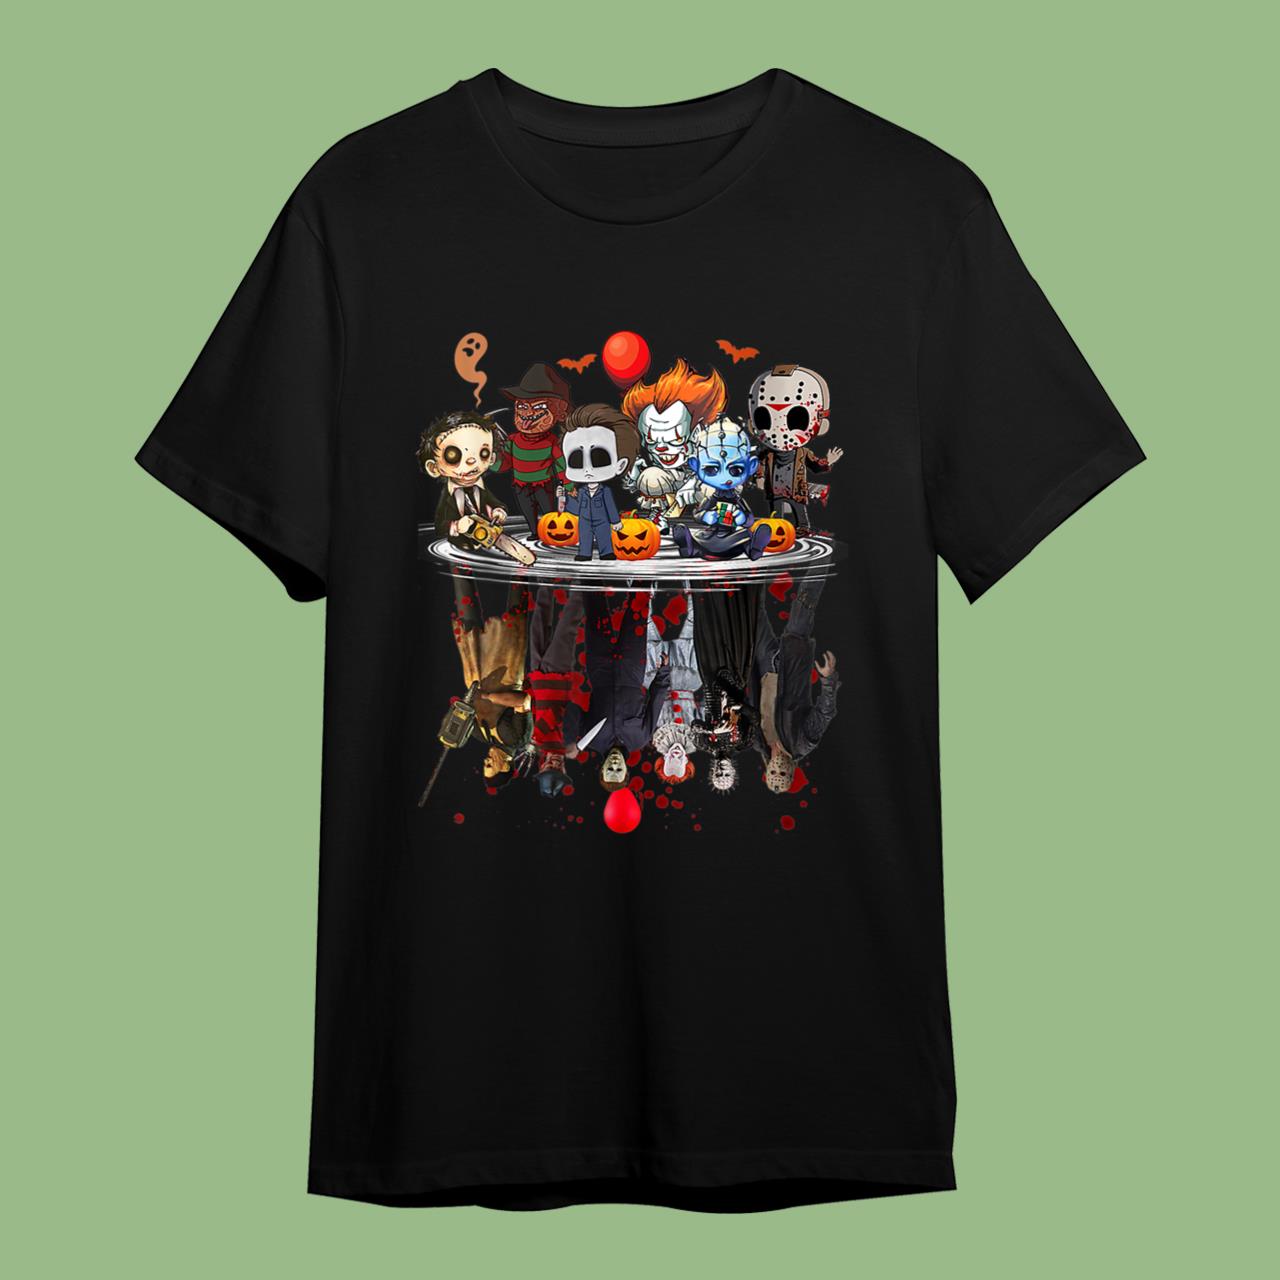 Skitongift Horror Movies Character Halloween Gift T-Shirt